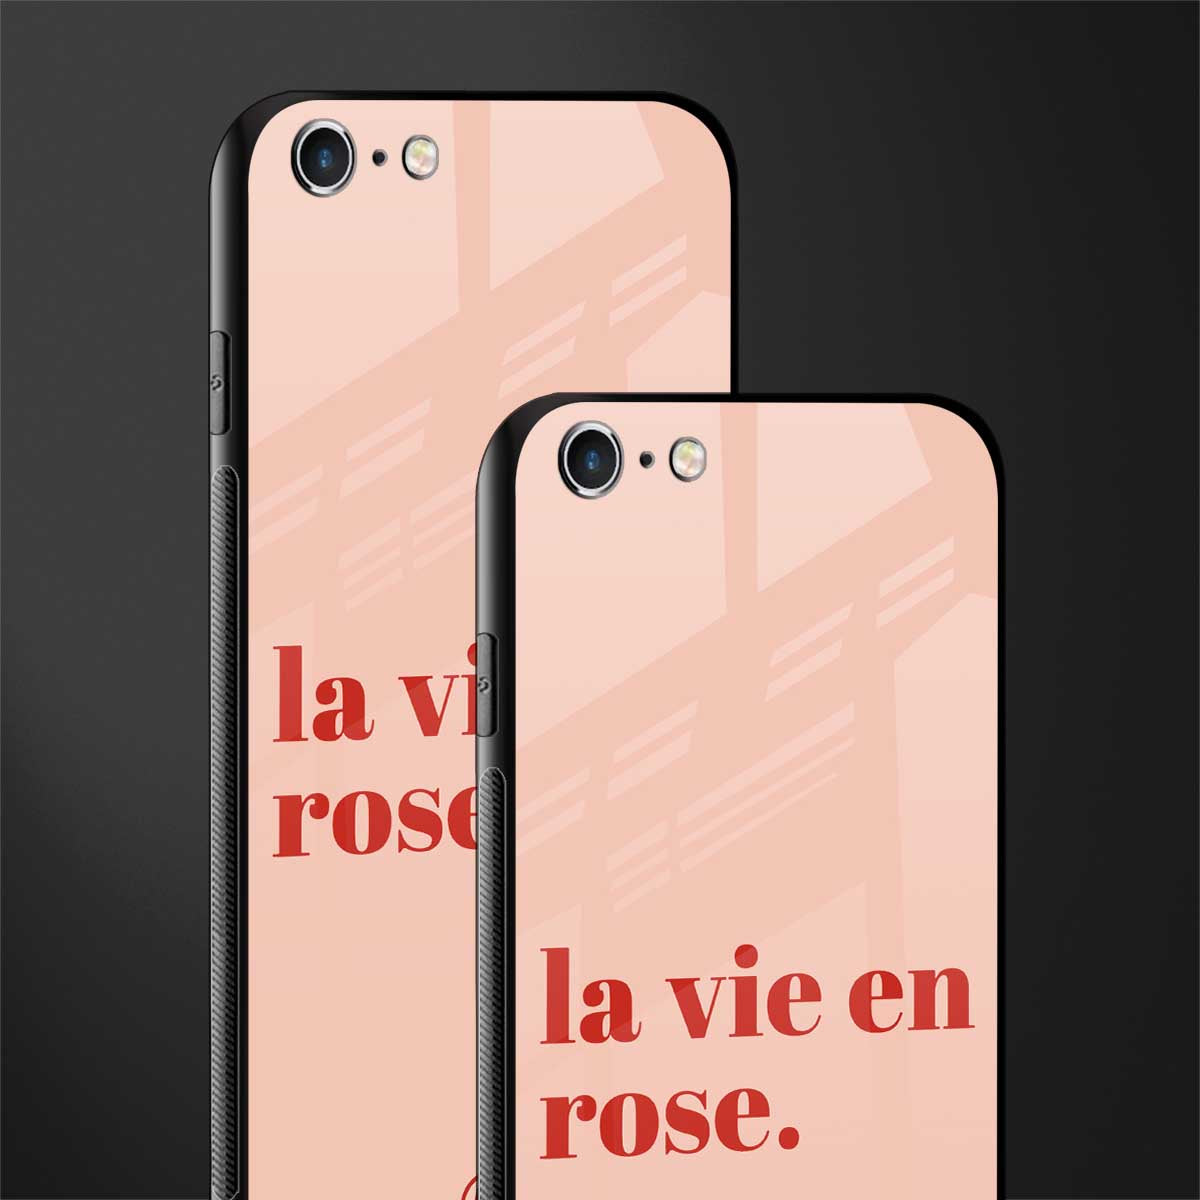 la vie en rose quote glass case for iphone 6s image-2